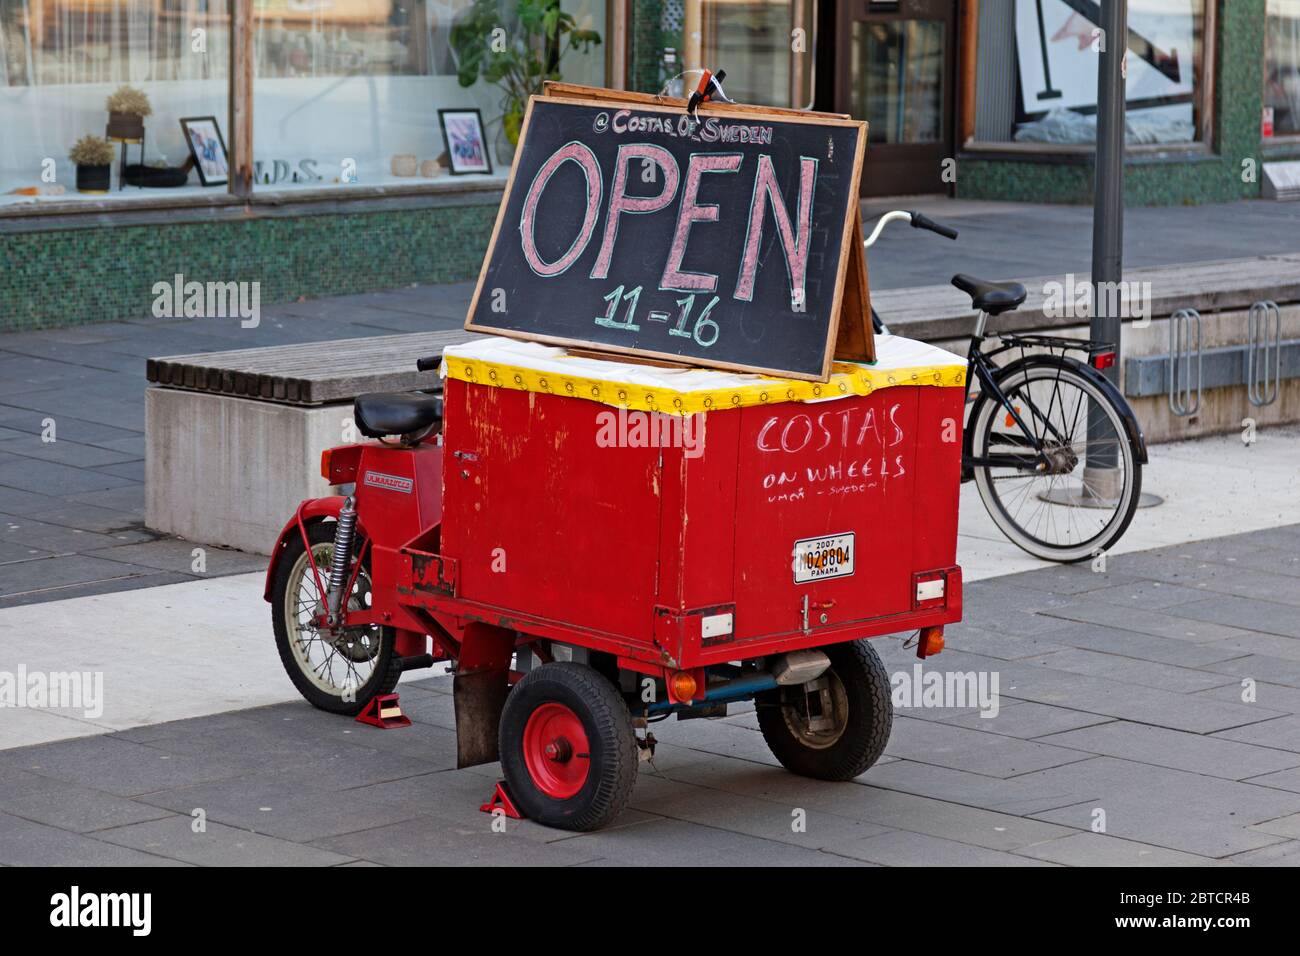 Umea, Norrland Suecia - 6 de abril de 2020: Ciclomotor rojo antiguo con cartel para restaurante Foto de stock